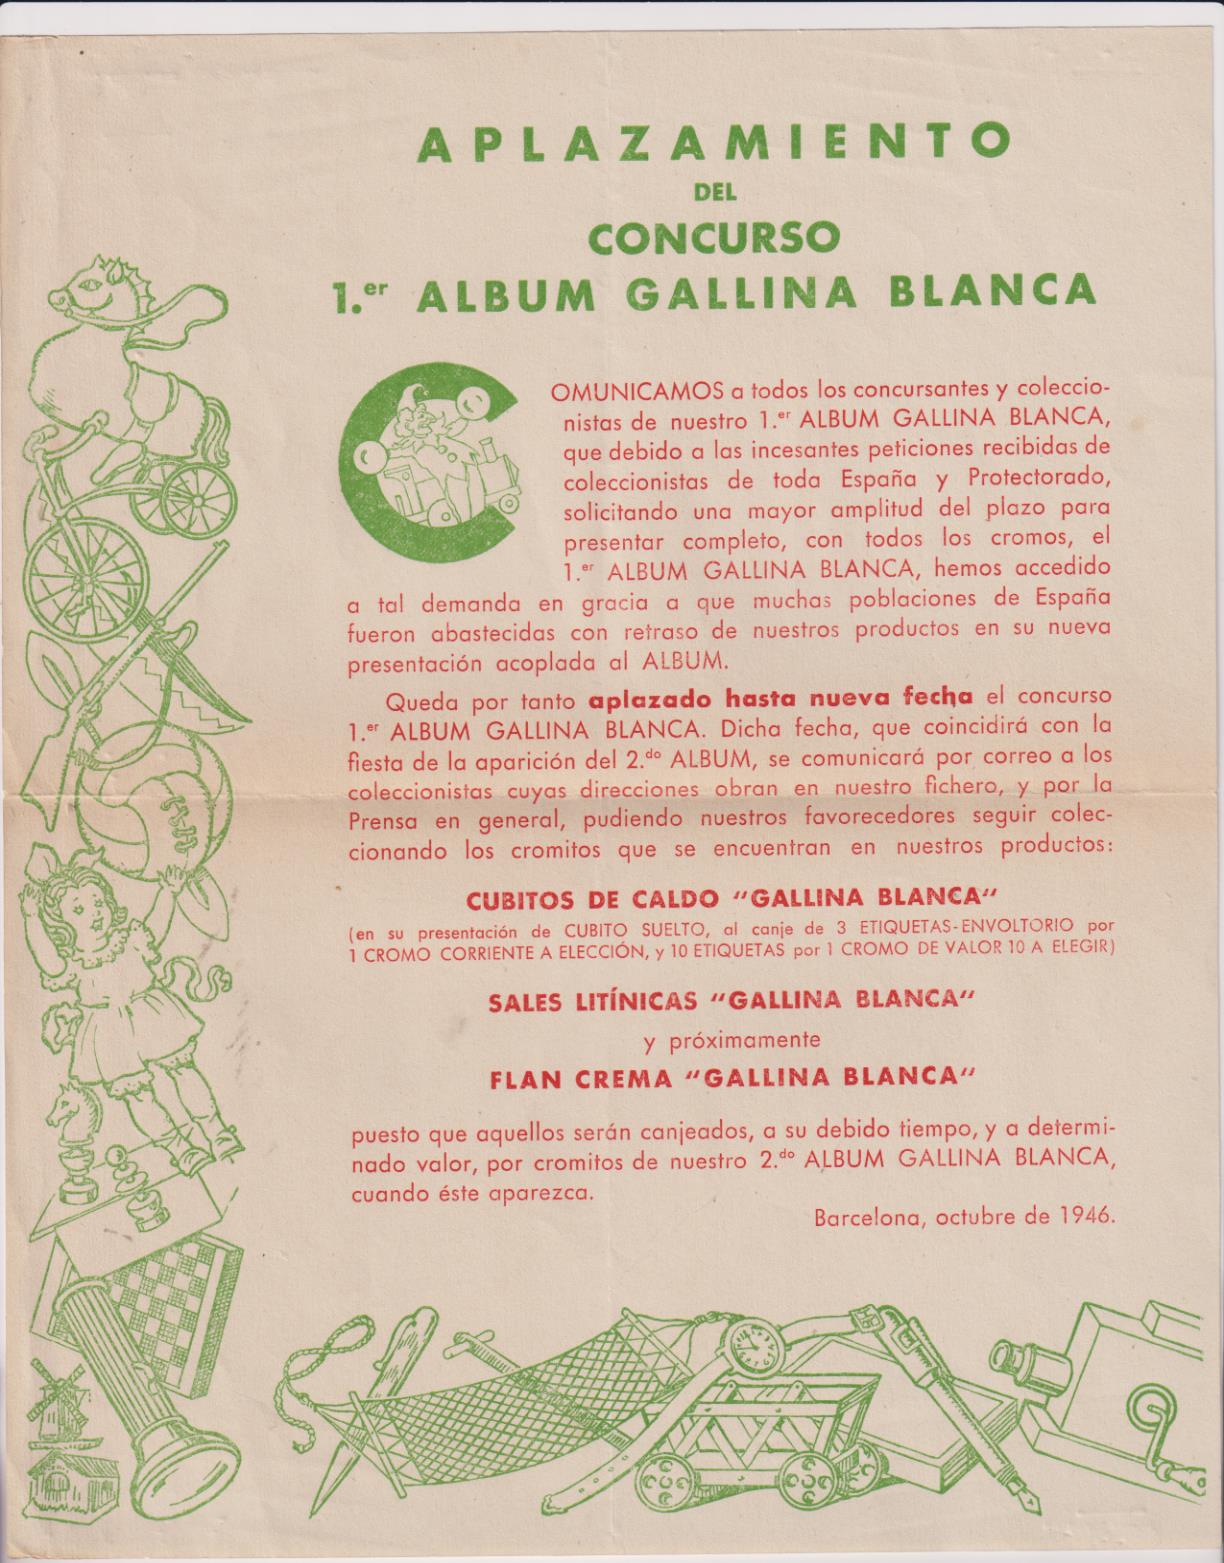 Aplazamiento del Concurso Primer Álbum Gallina Blanca. Barcelona Octubre de 1946